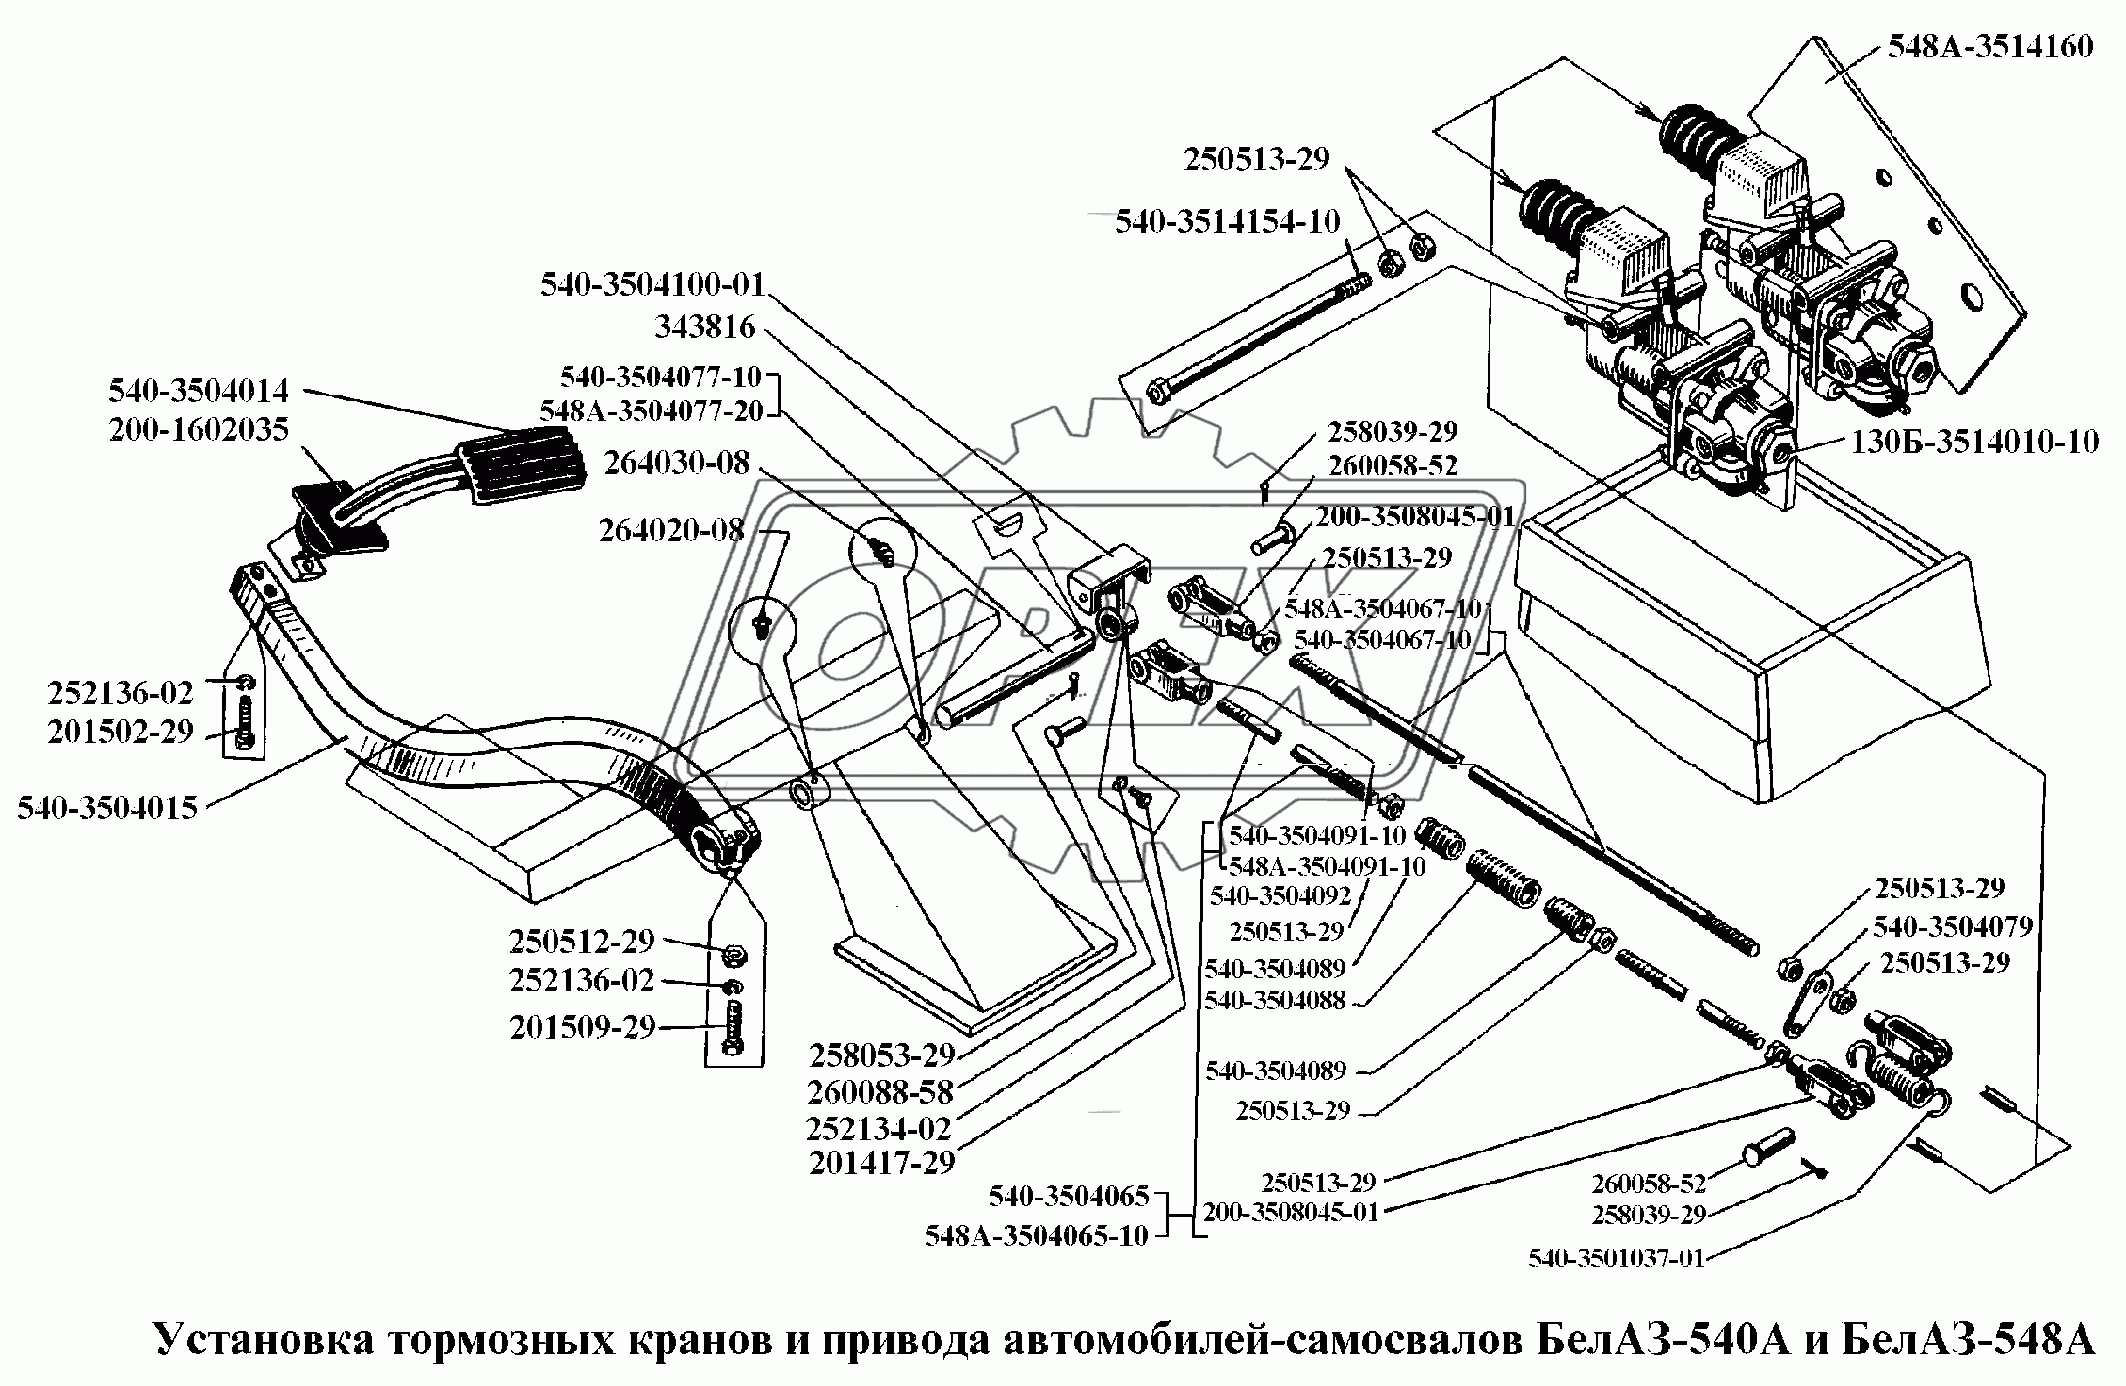 Установка тормозных кранов и привода автомобилей-самосвалов БелАЗ-540А и БелАЗ-548А